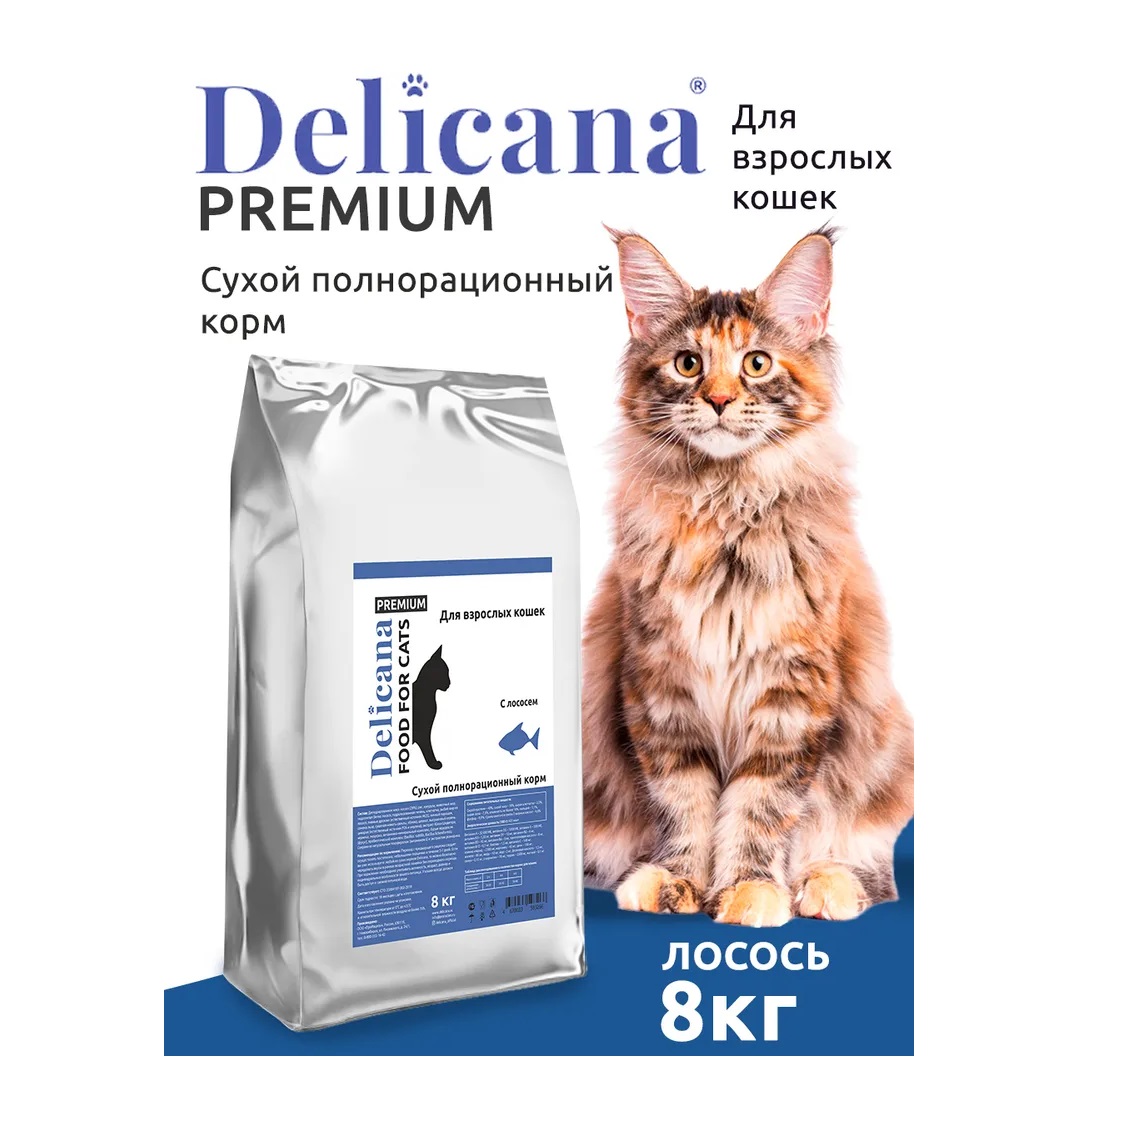 Деликана 8кг для кошек - Лосось (Delicana)